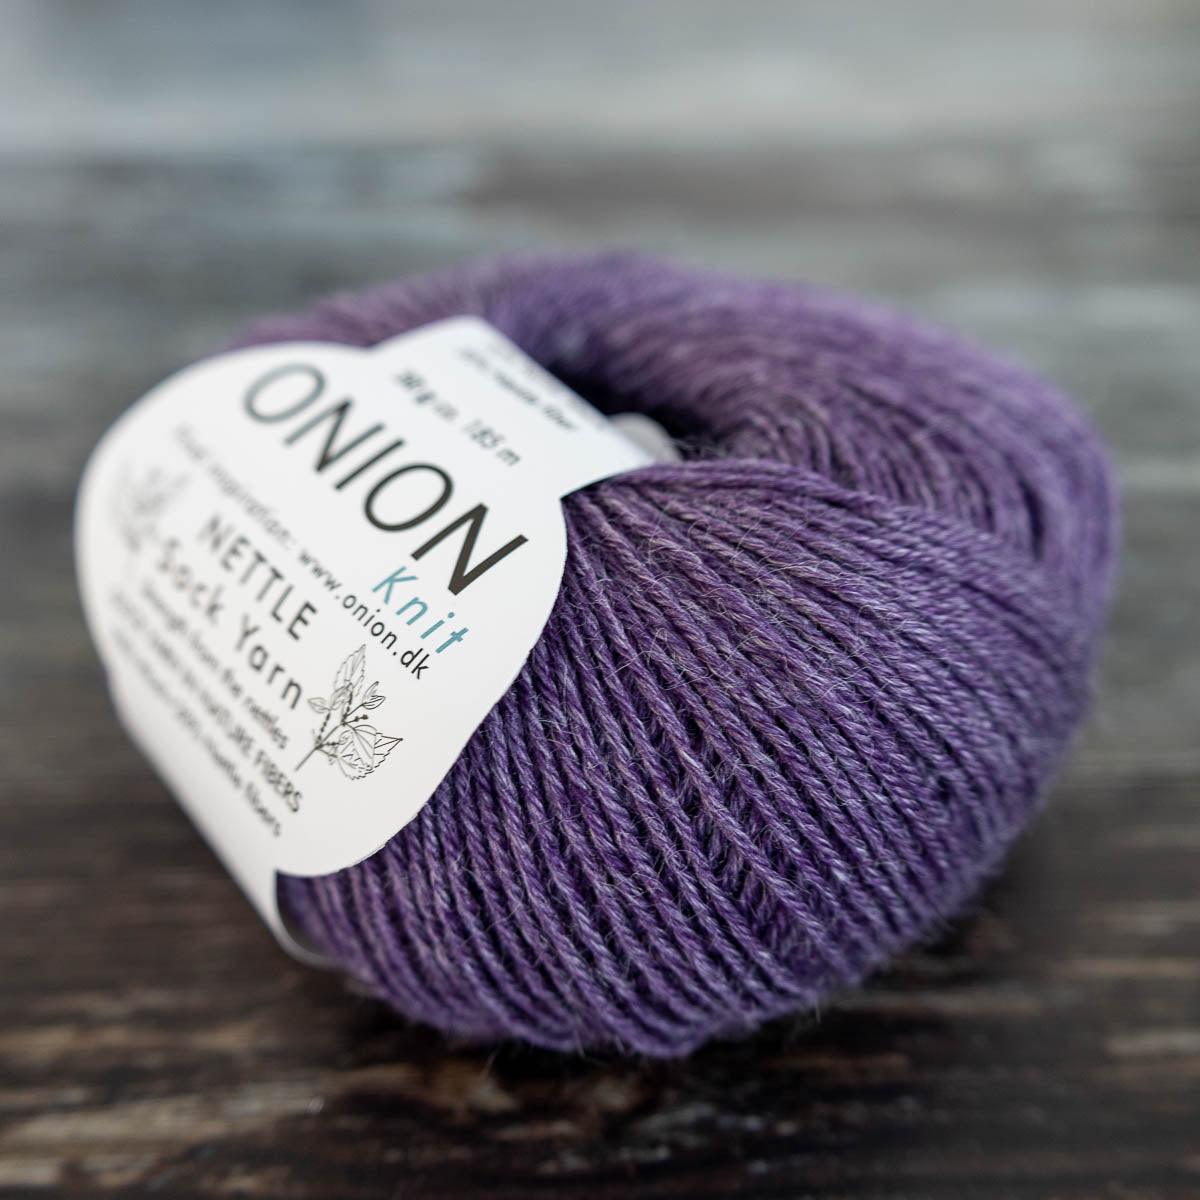 Onion Onion Nettle Sock Yarn - 1009 mørk lilla - Yarn